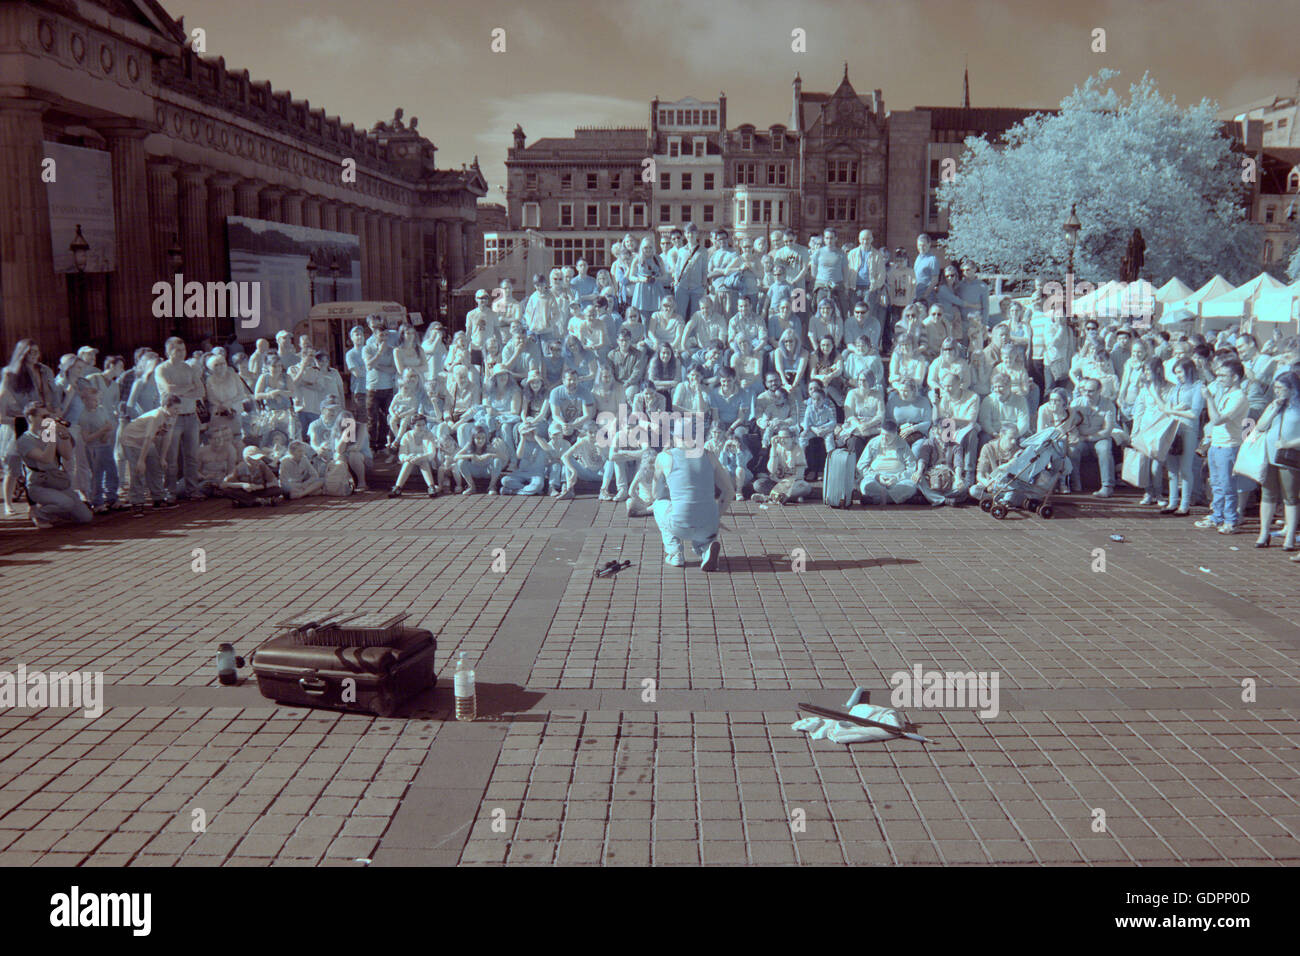 Scènes de caméra infrarouge Edinburgh Festival Fringe festival de rue parrainé vierge Edinburgh, Ecosse, Royaume-Uni Banque D'Images